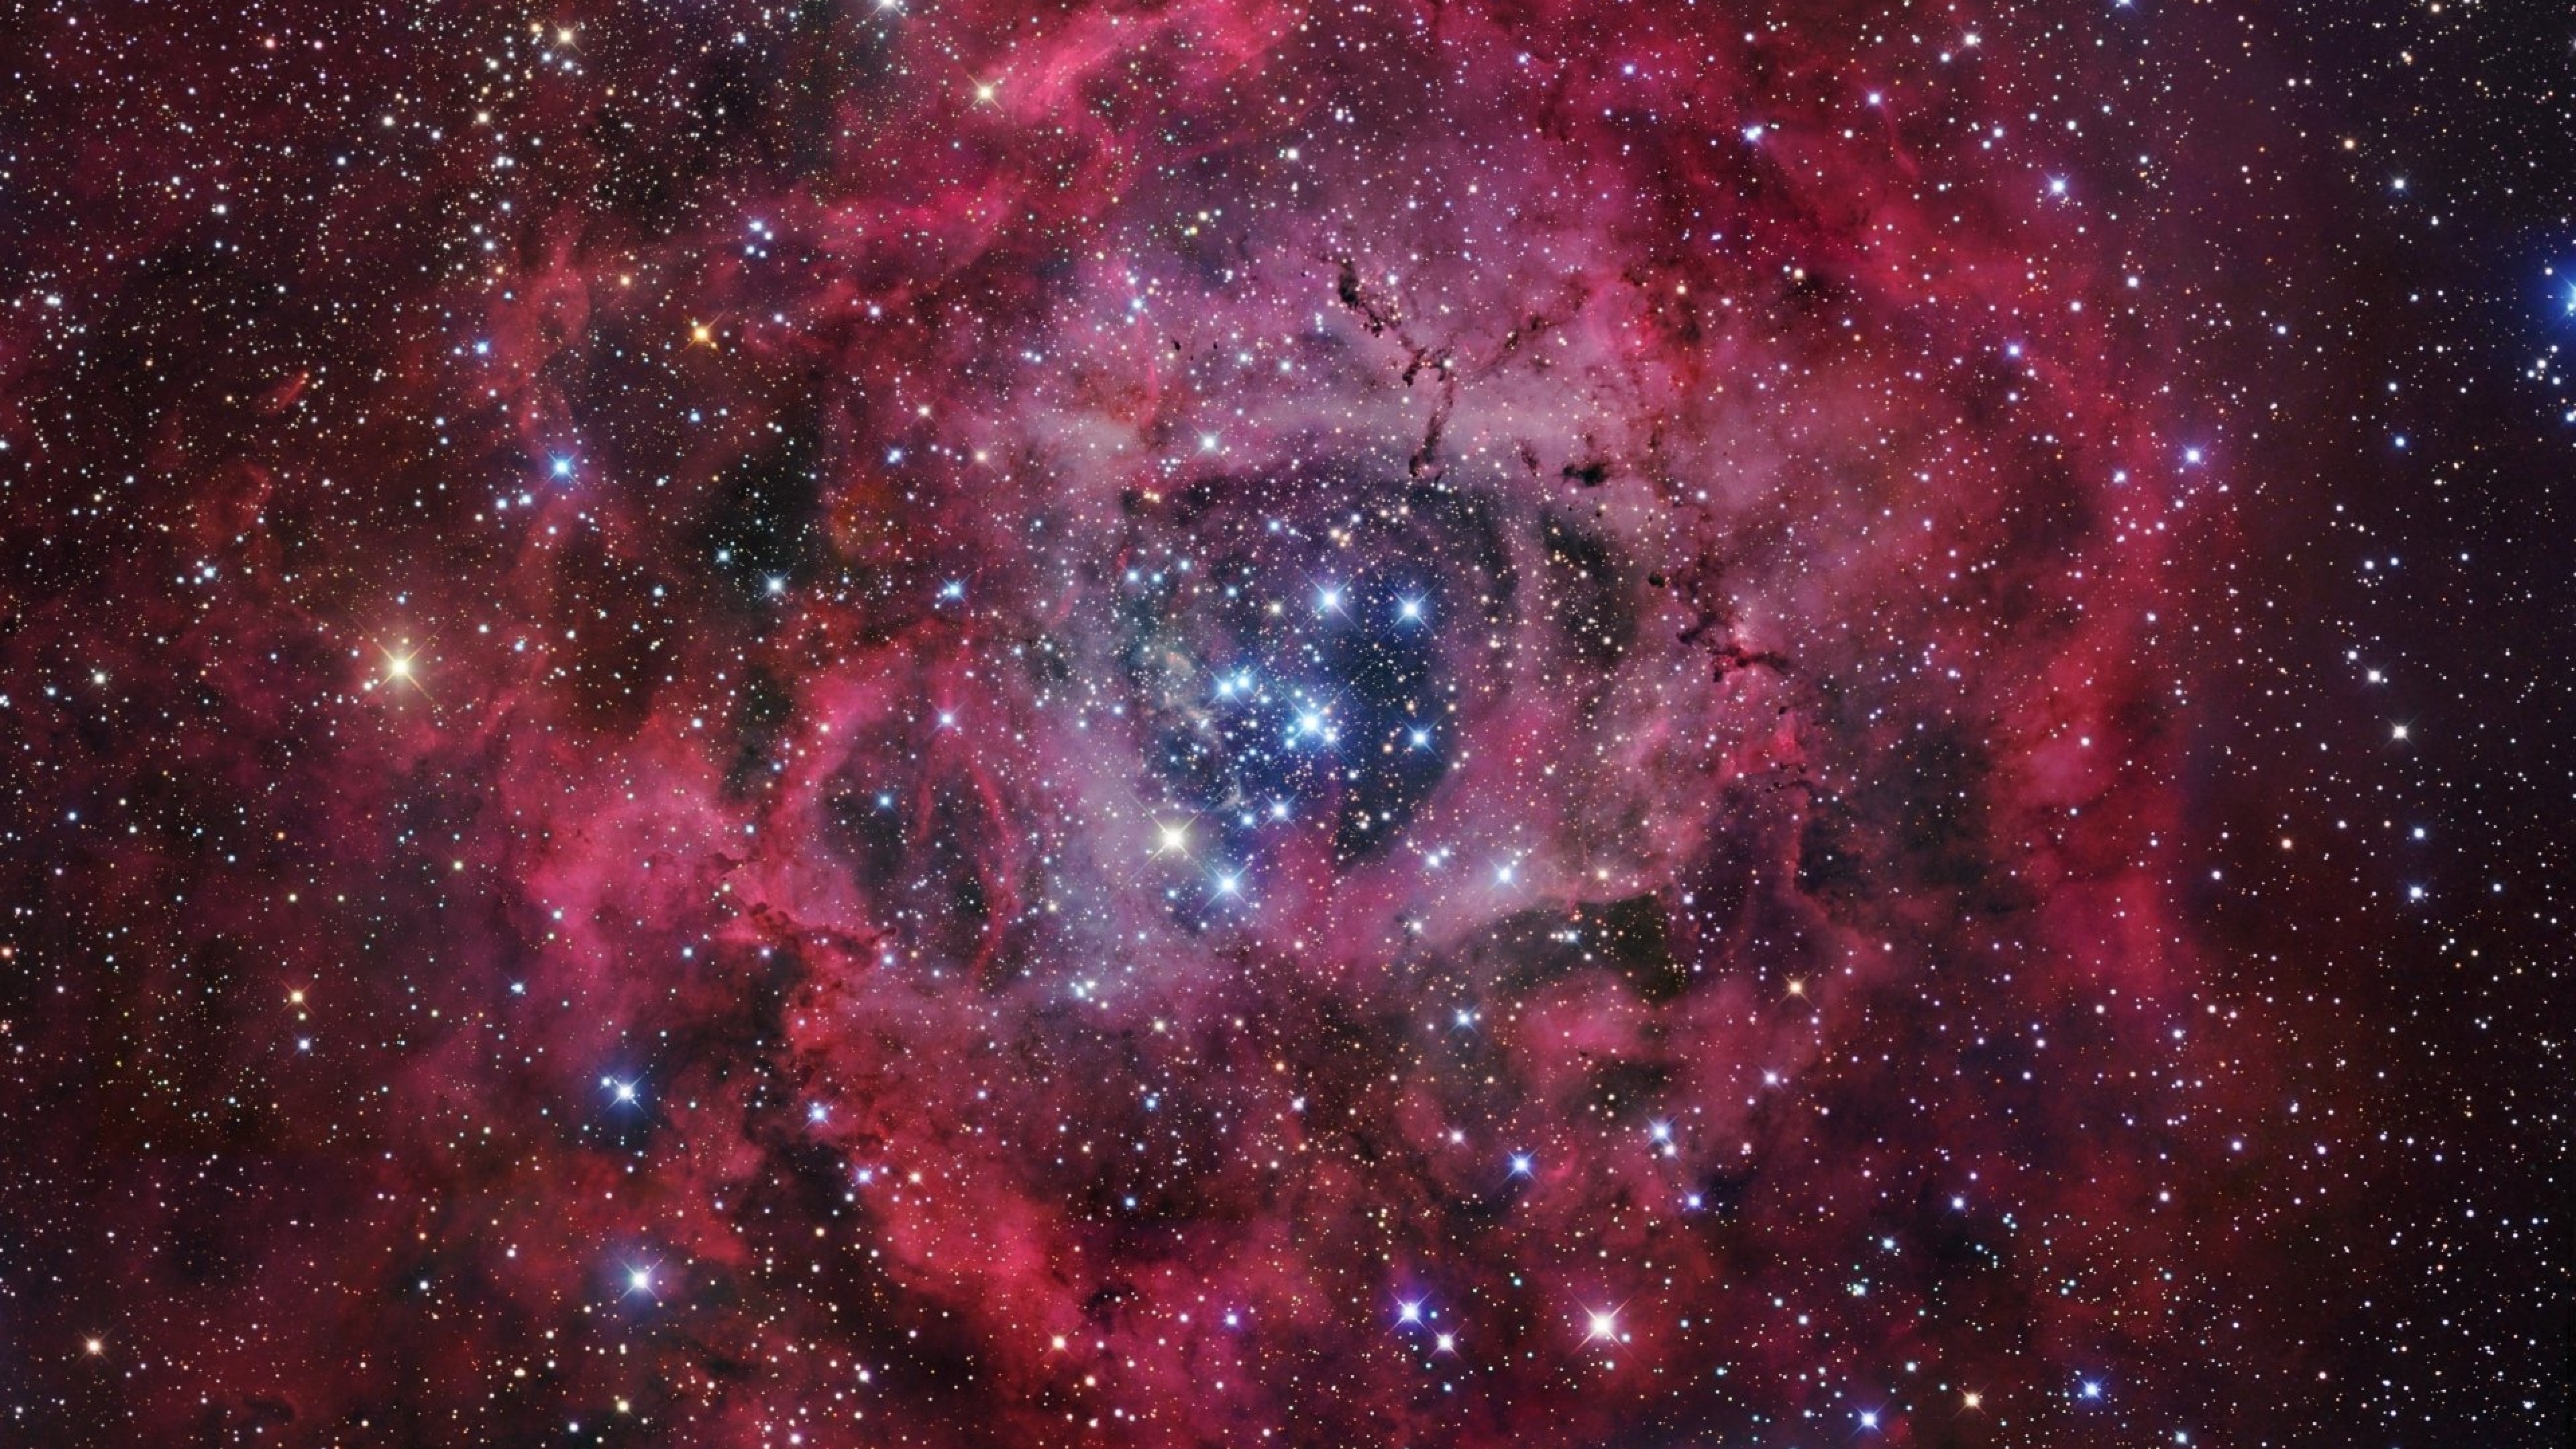 3840x2160 Resolution Rosette Nebula 4K Wallpaper - Wallpapers Den